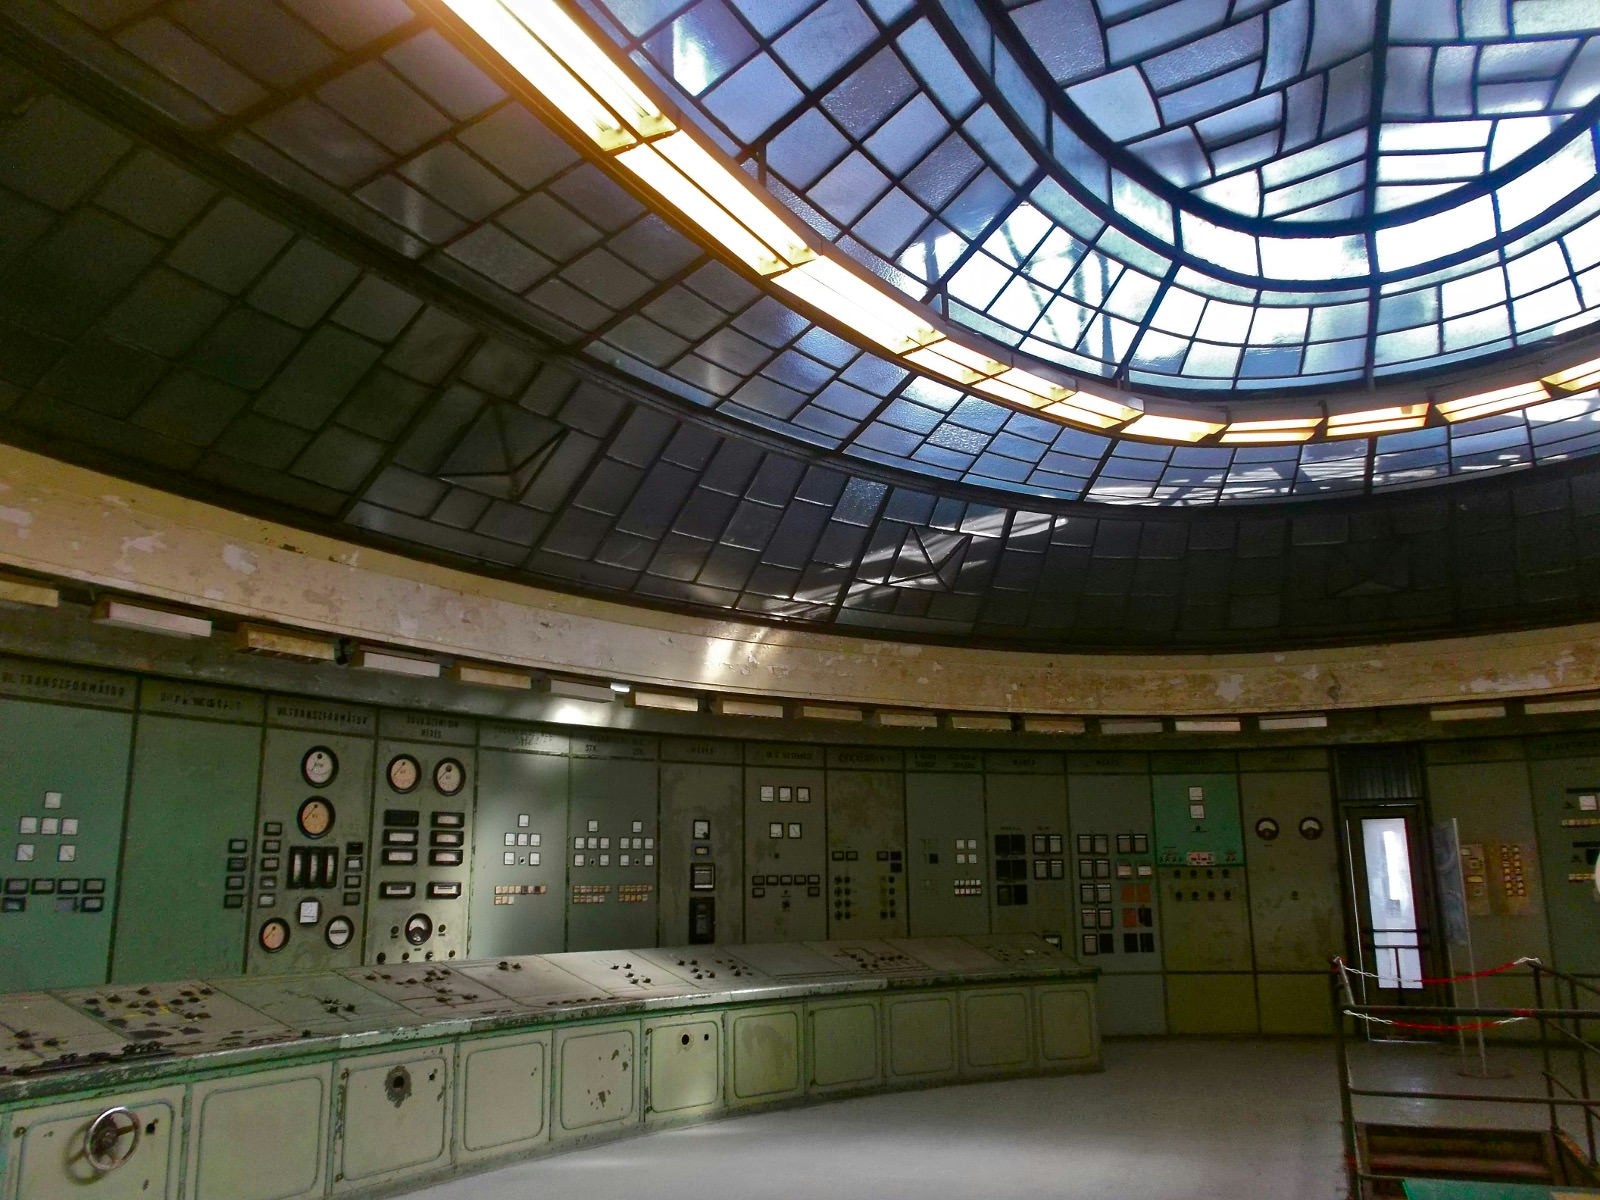 The control room of Kelenföld Power Station © Jennifer Walker / Lonely Planet